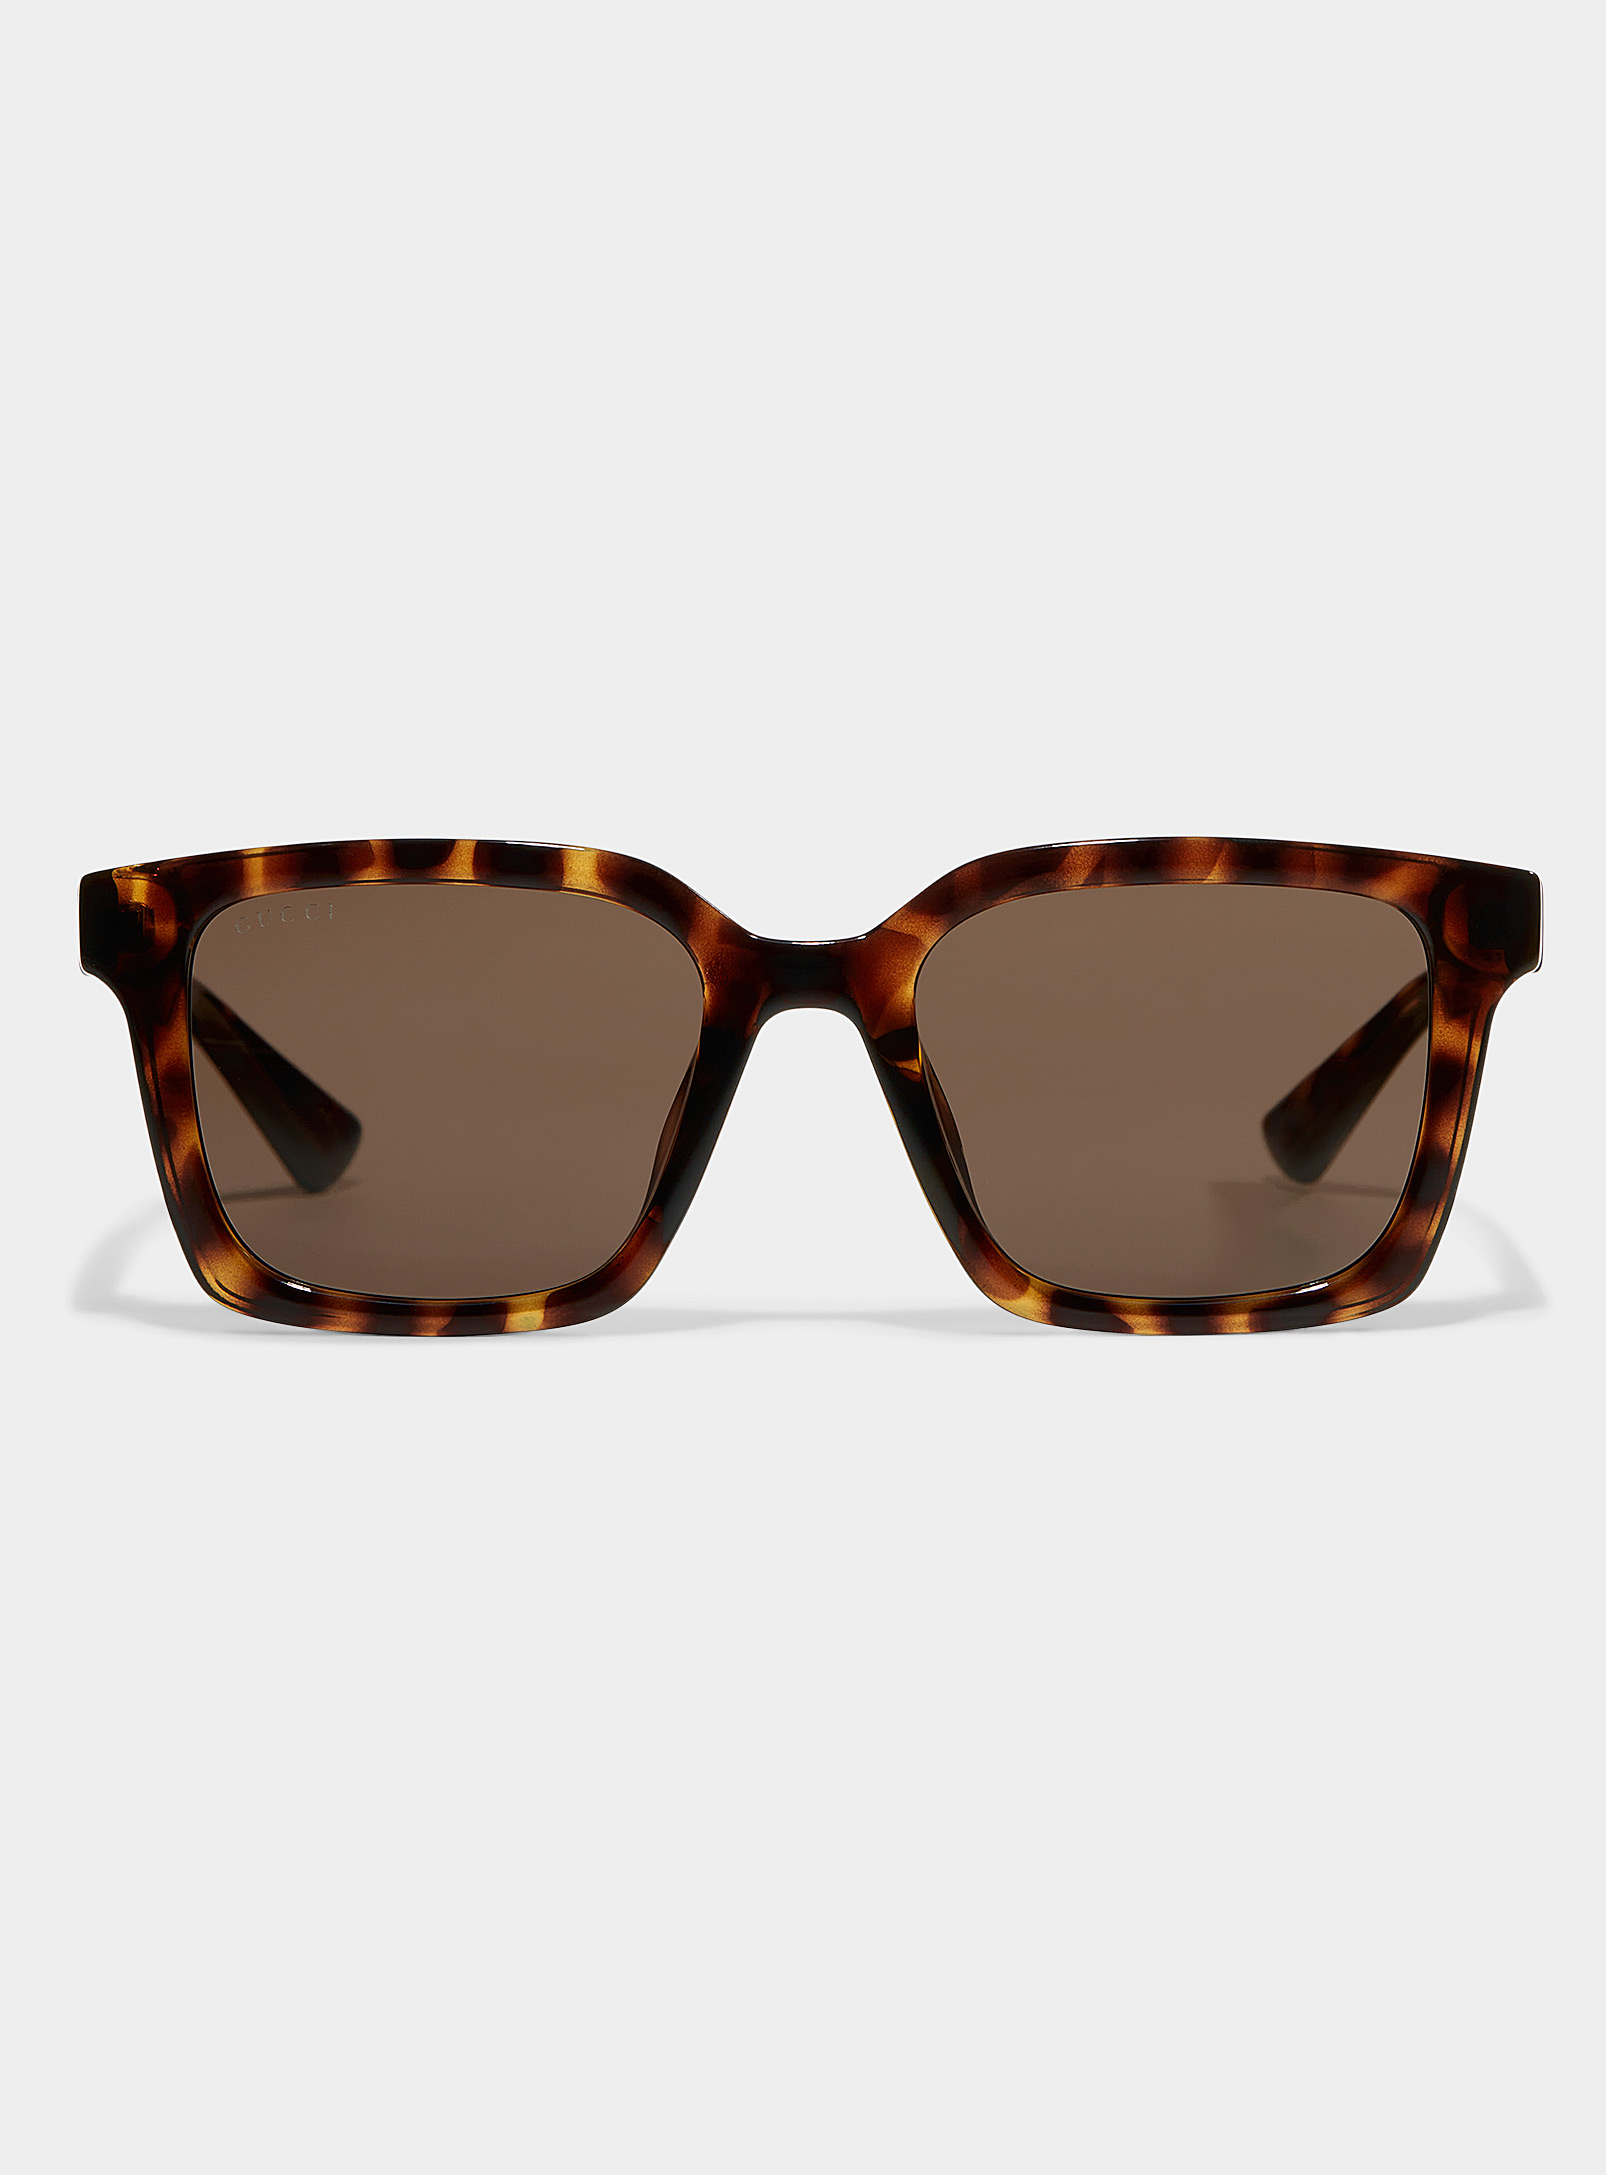 Gucci Monochrome Square Sunglasses In Brown